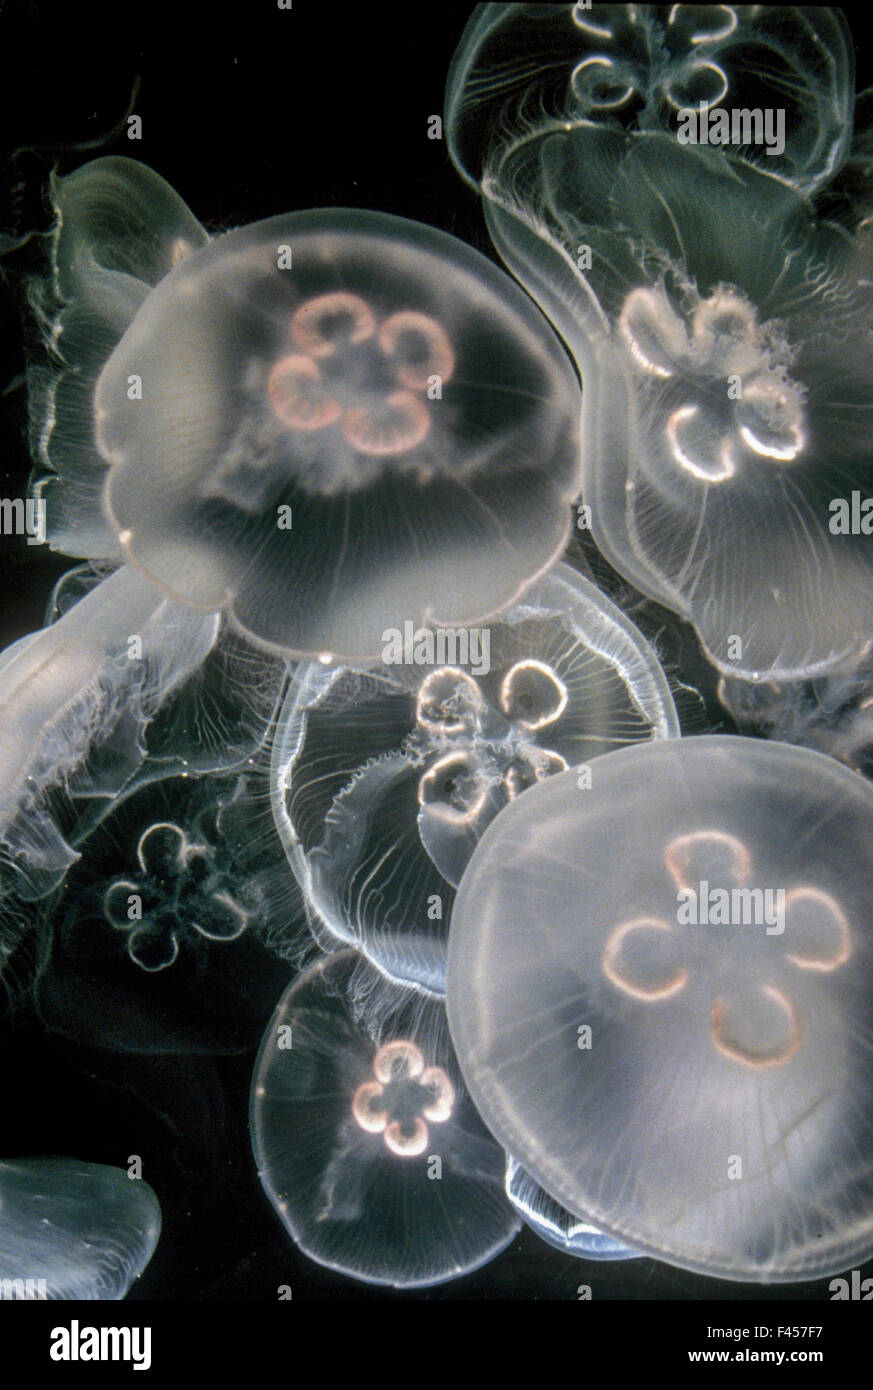 Medusas o gelatinas son cnidarios, animales marinos de natación libre compuesto de un paraguas gelatinoso con forma de campana y trailing tentáculos. La campana puede licuar para locomoción, mientras tentáculos puede utilizarse para capturar a sus presas. Foto de stock